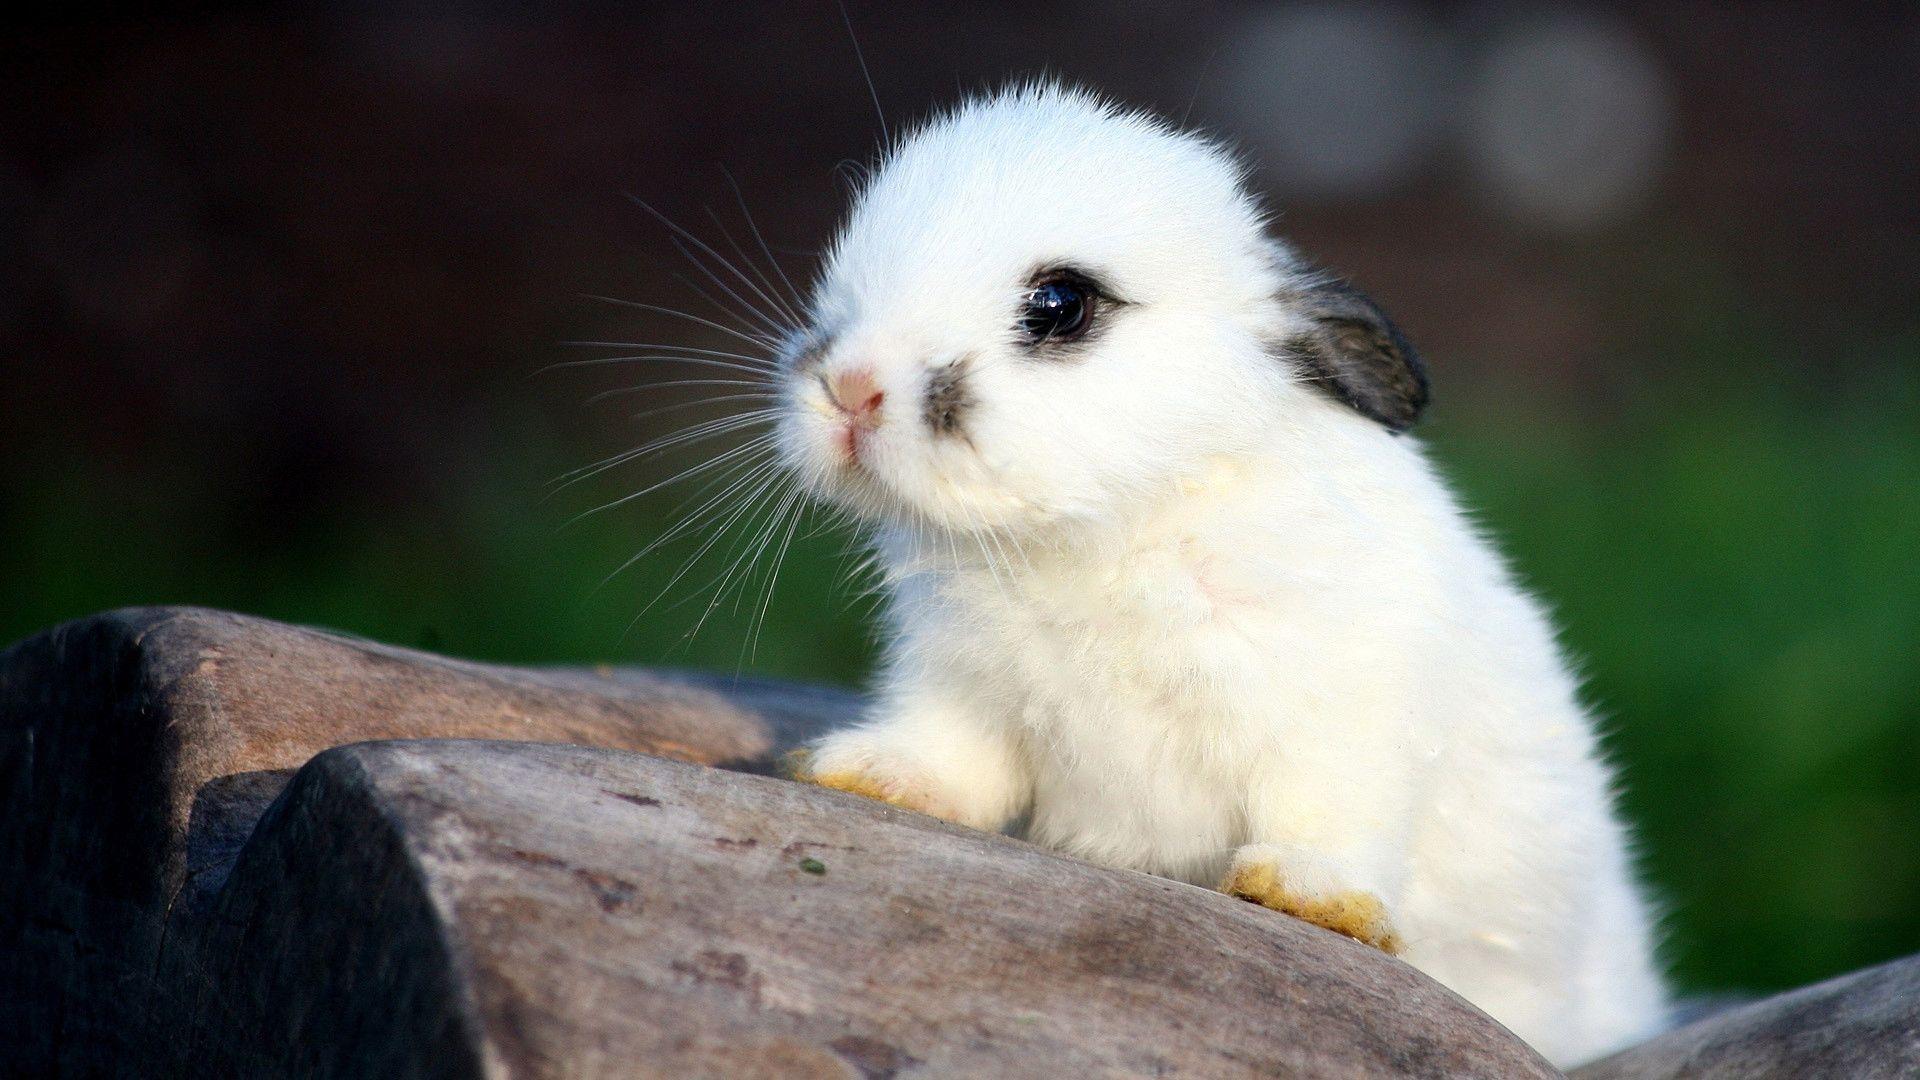 Bạn yêu thích các loài thỏ đáng yêu? Chúng tôi có một bức ảnh nền thỏ đáng yêu hoàn toàn miễn phí cho bạn. Hãy tải về và trang trí cho điện thoại của bạn ngay hôm nay – một niềm vui đơn giản và hiệu quả!